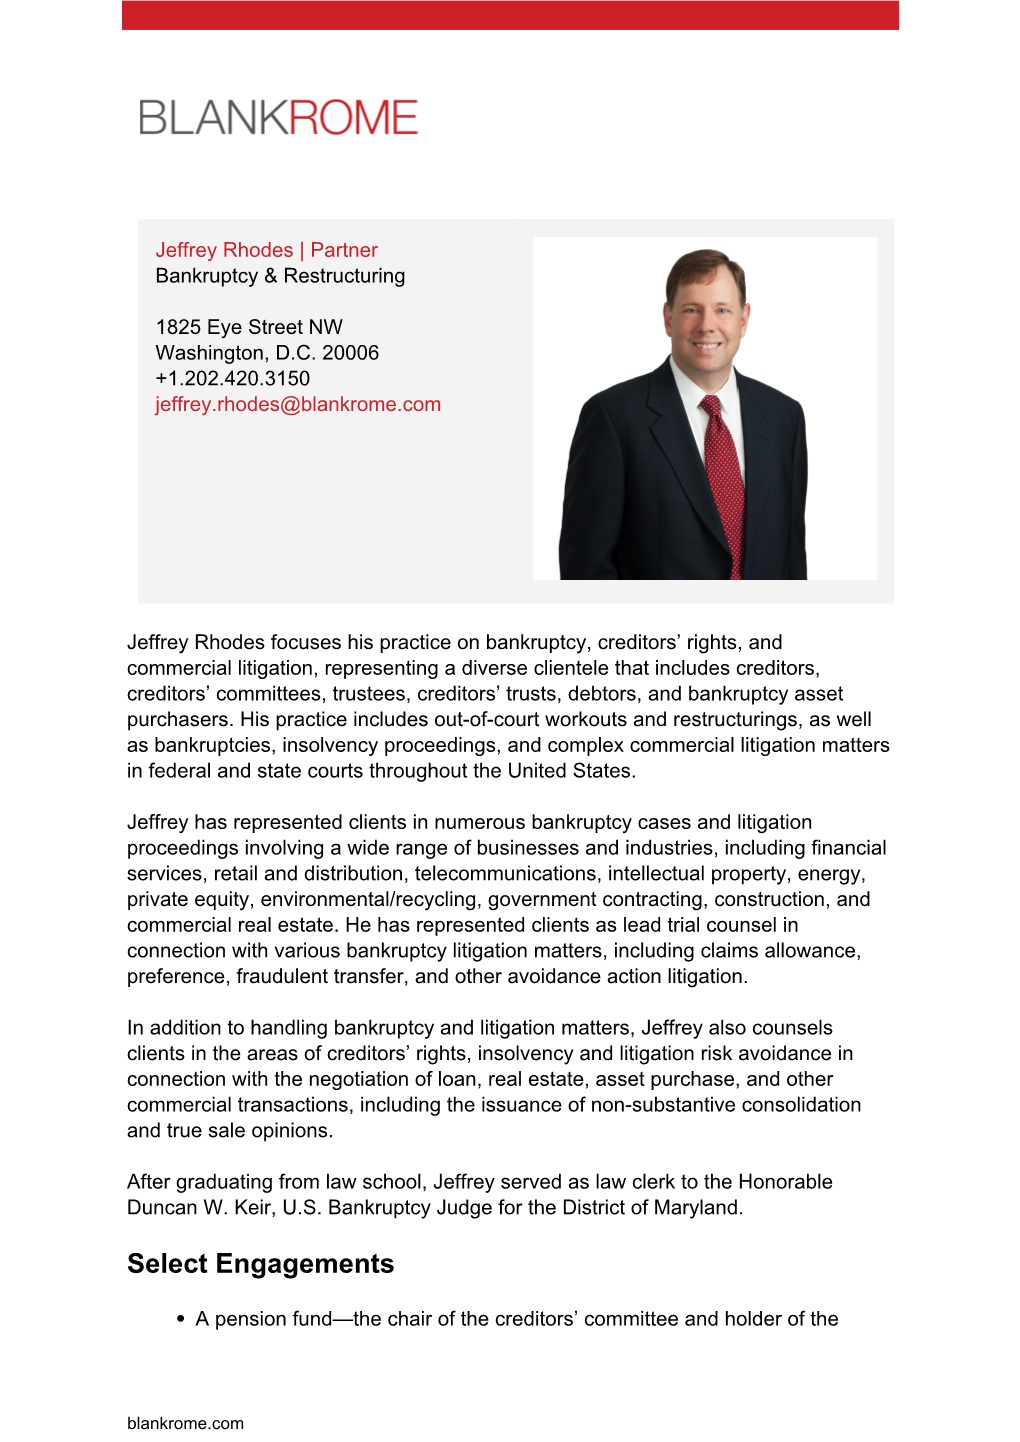 Jeffrey Rhodes | Partner Bankruptcy & Restructuring